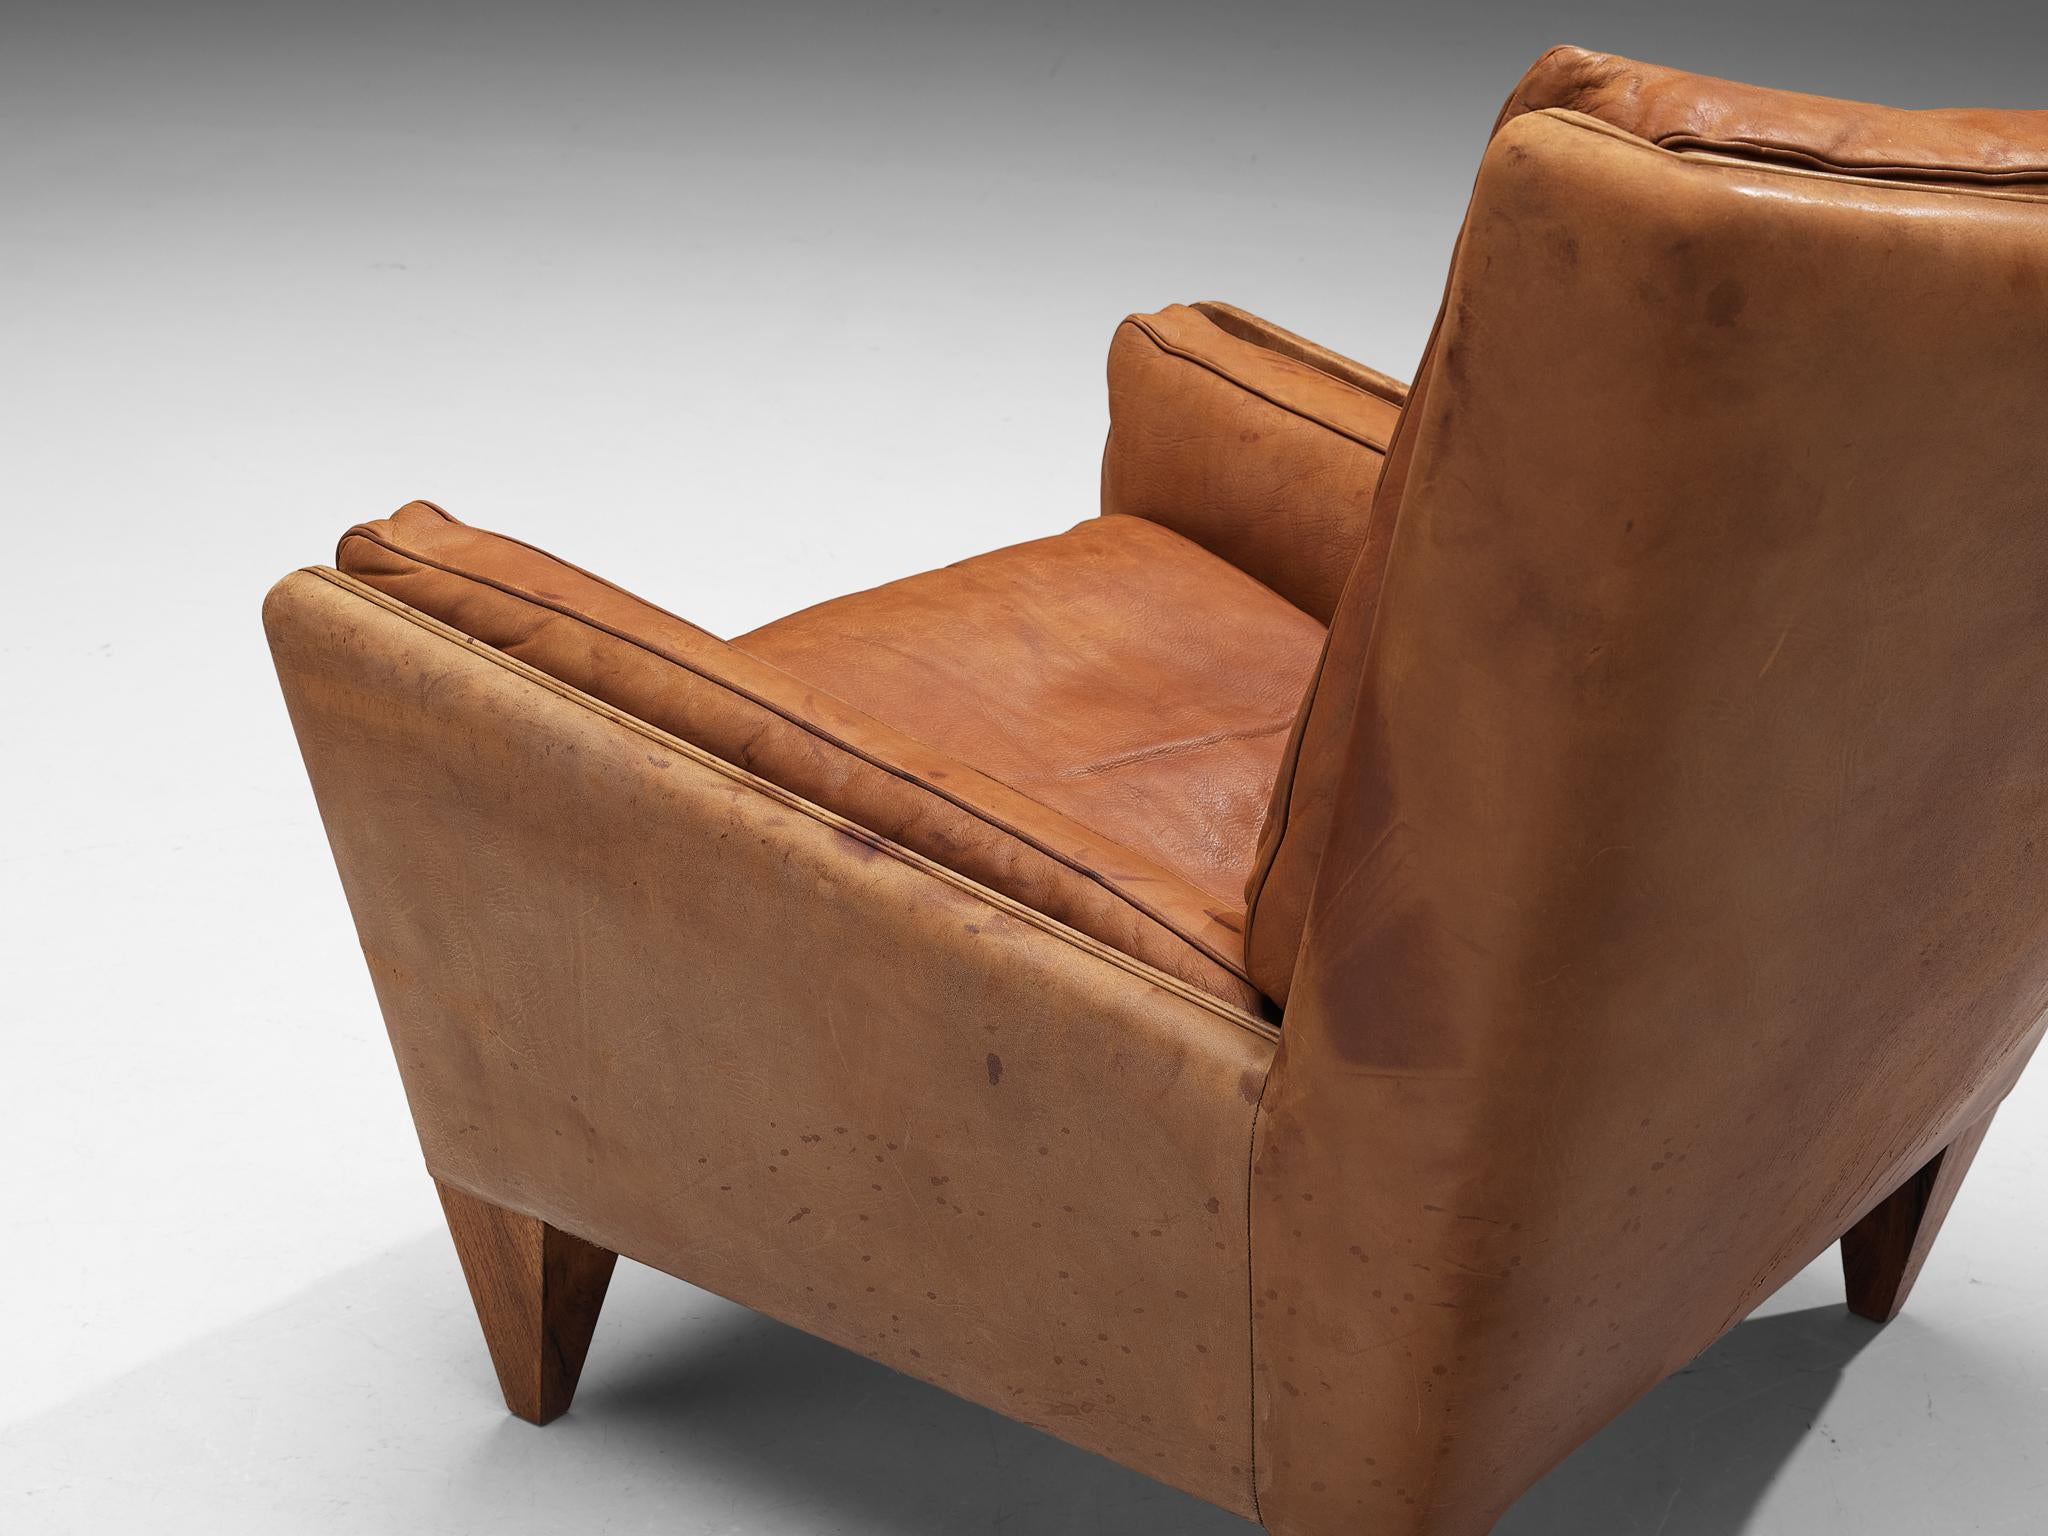 Illum Wikkelso for Holger Christiansen ‘V11’ Lounge Chair in Cognac Leather 2